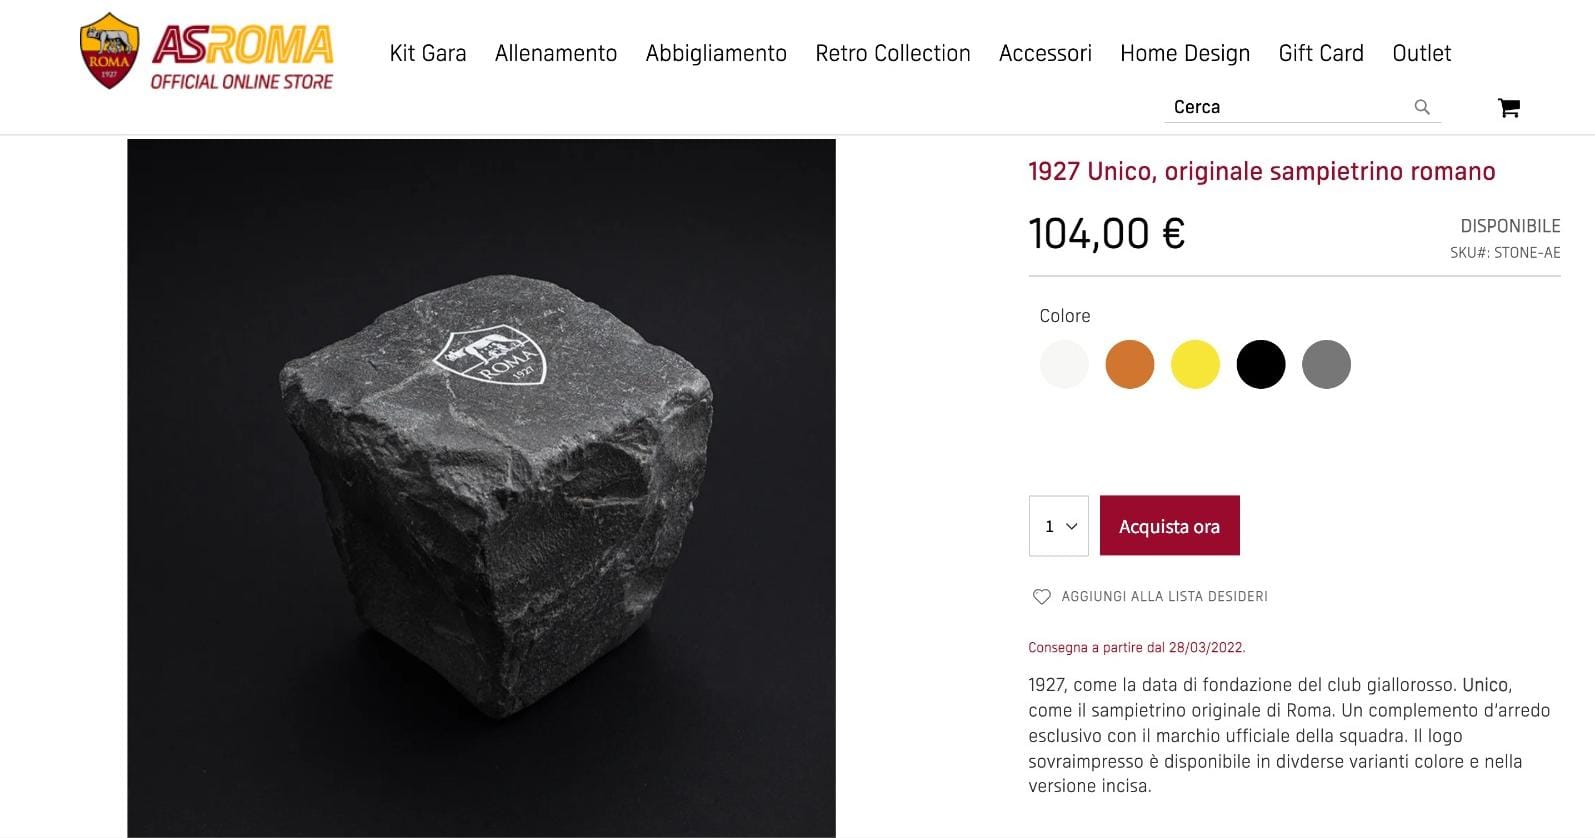 AS Roma ha messo in vendita una pietra a 104€ nel suo store online